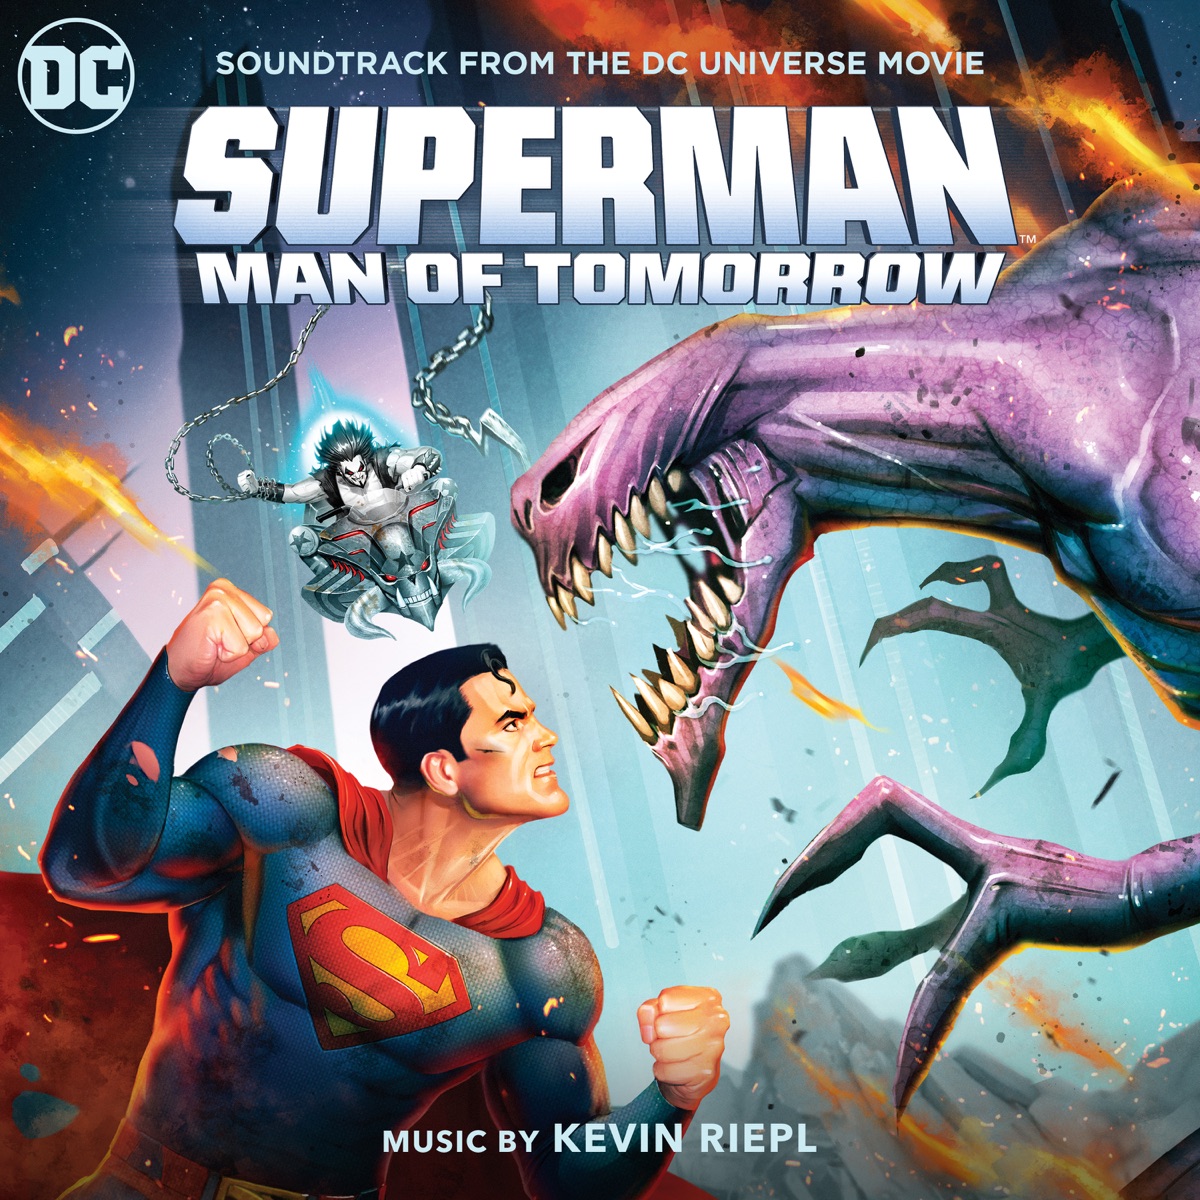 á‰ Superman Man Of Tomorrow Soundtrack From The Dc Universe Movie Mp3 320kbps Flac Download Soundtracks